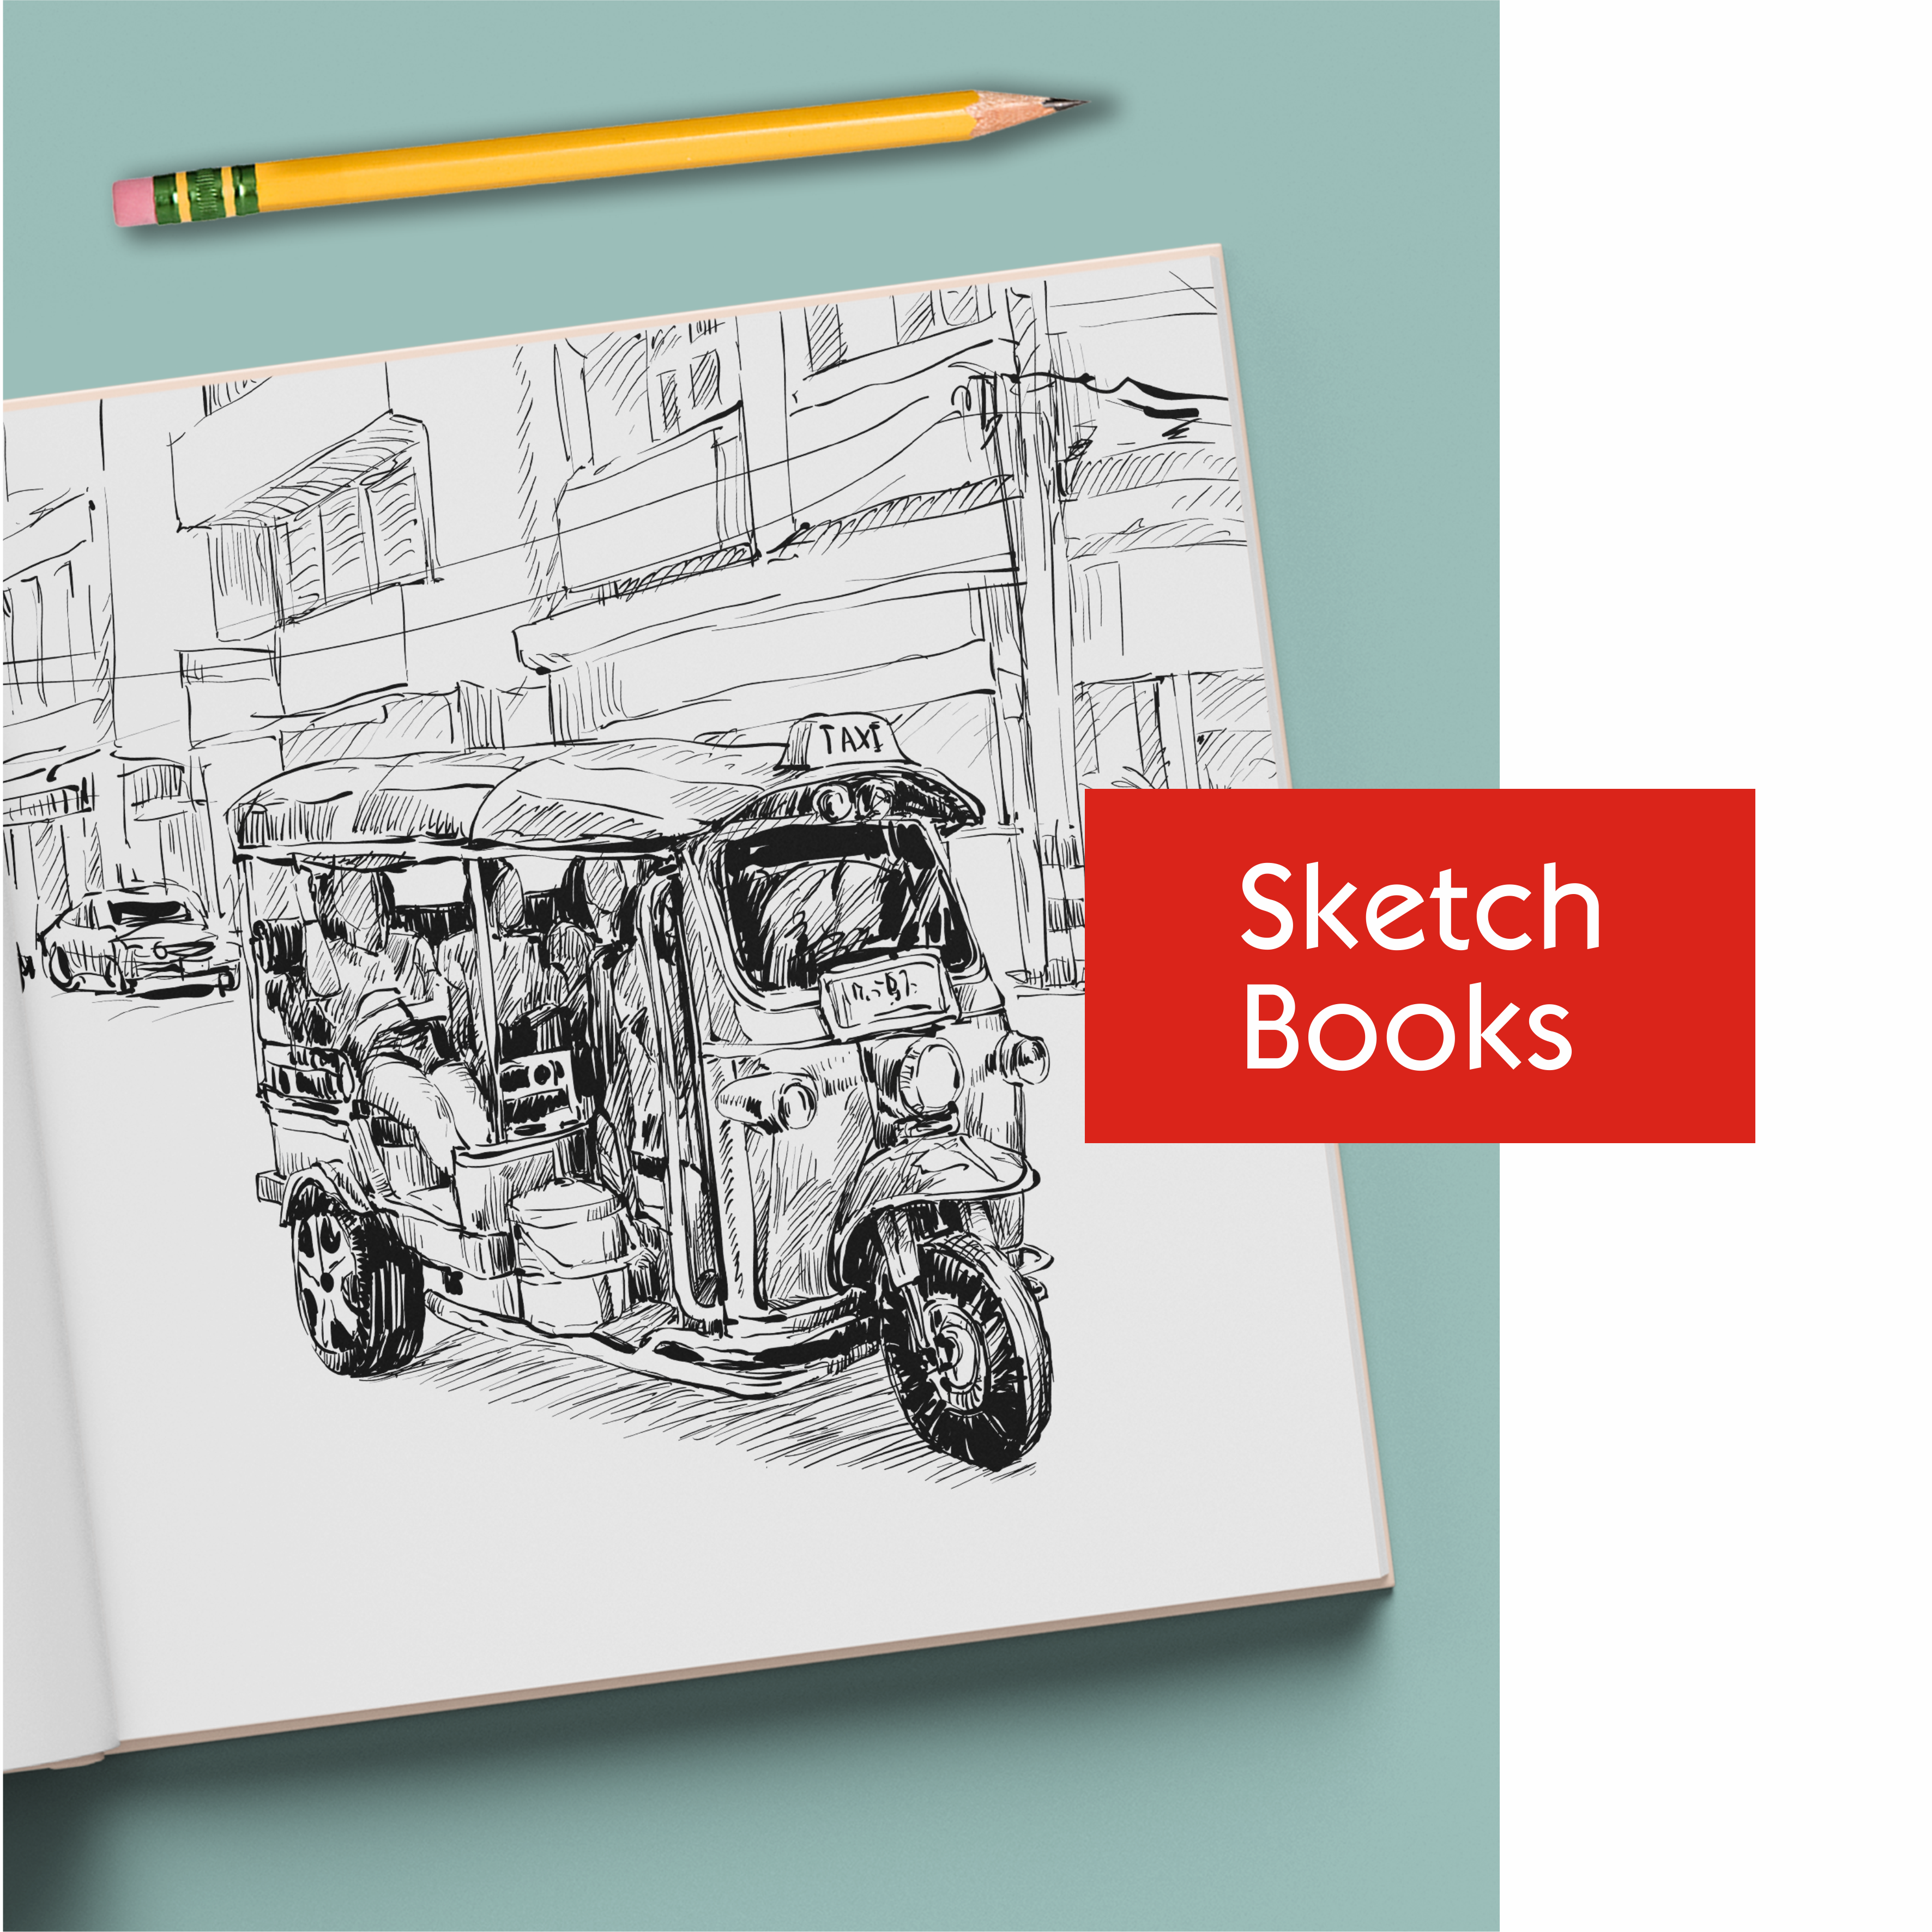 Zaslan A5 sketchbook Sketch Pad Price in India - Buy Zaslan A5